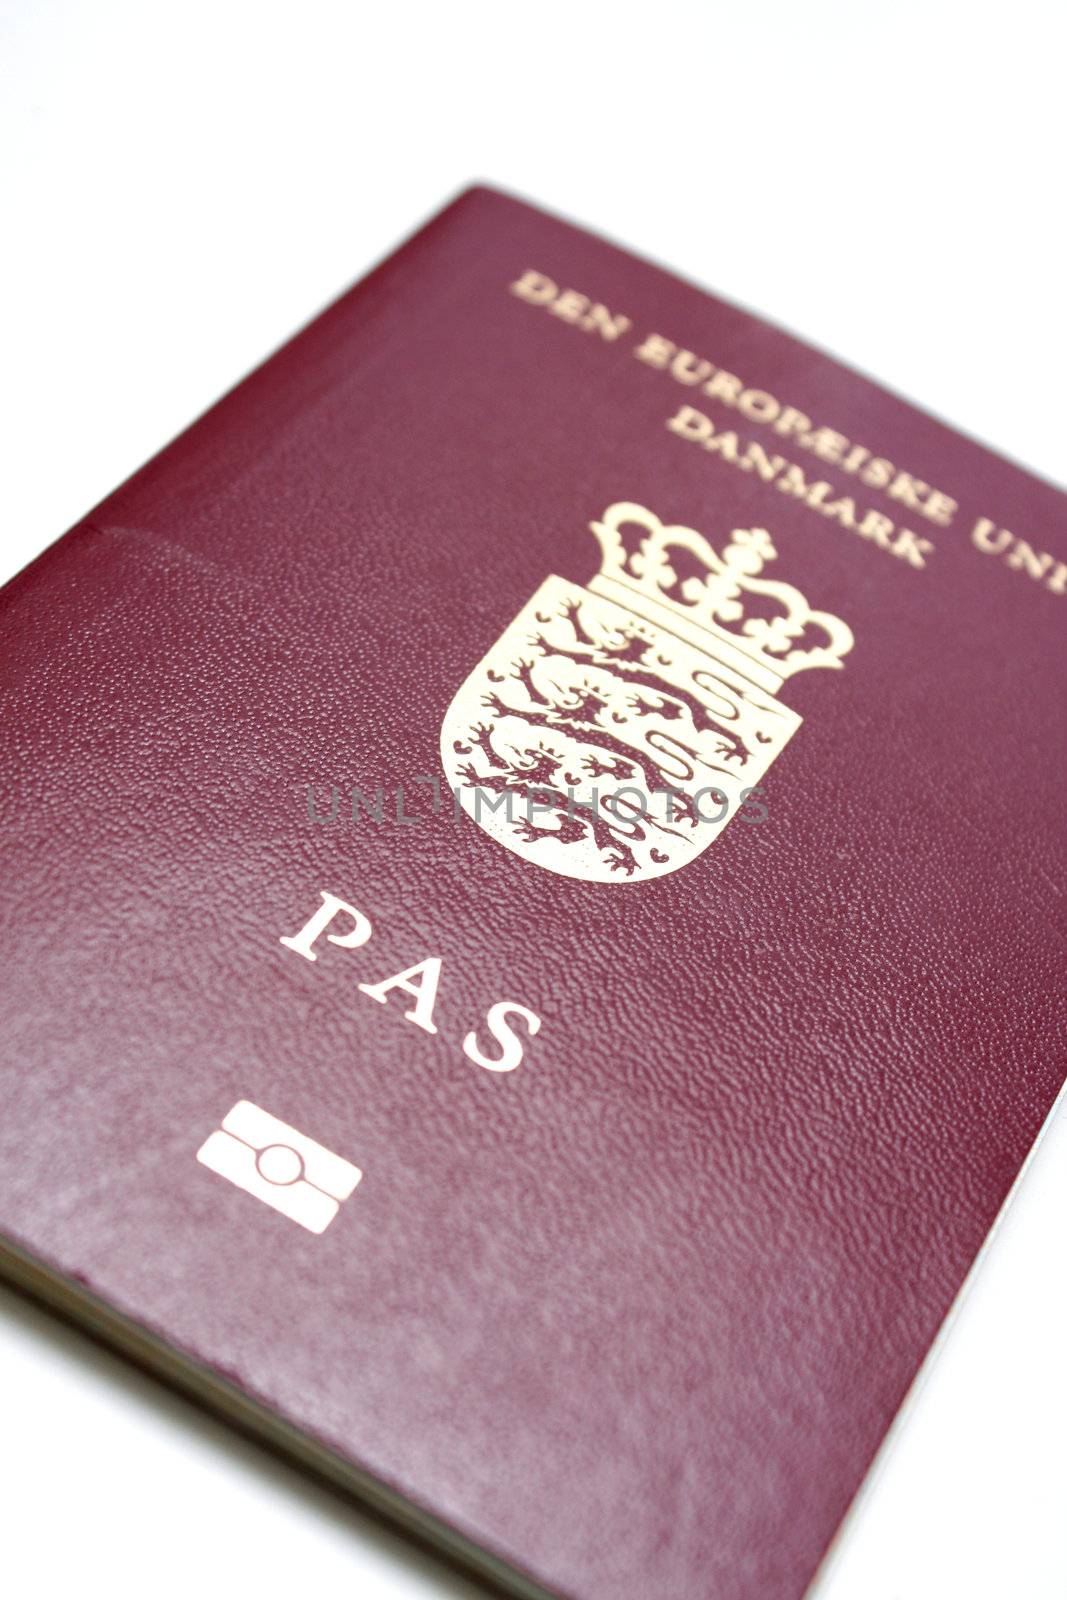 Danish passport by leeser